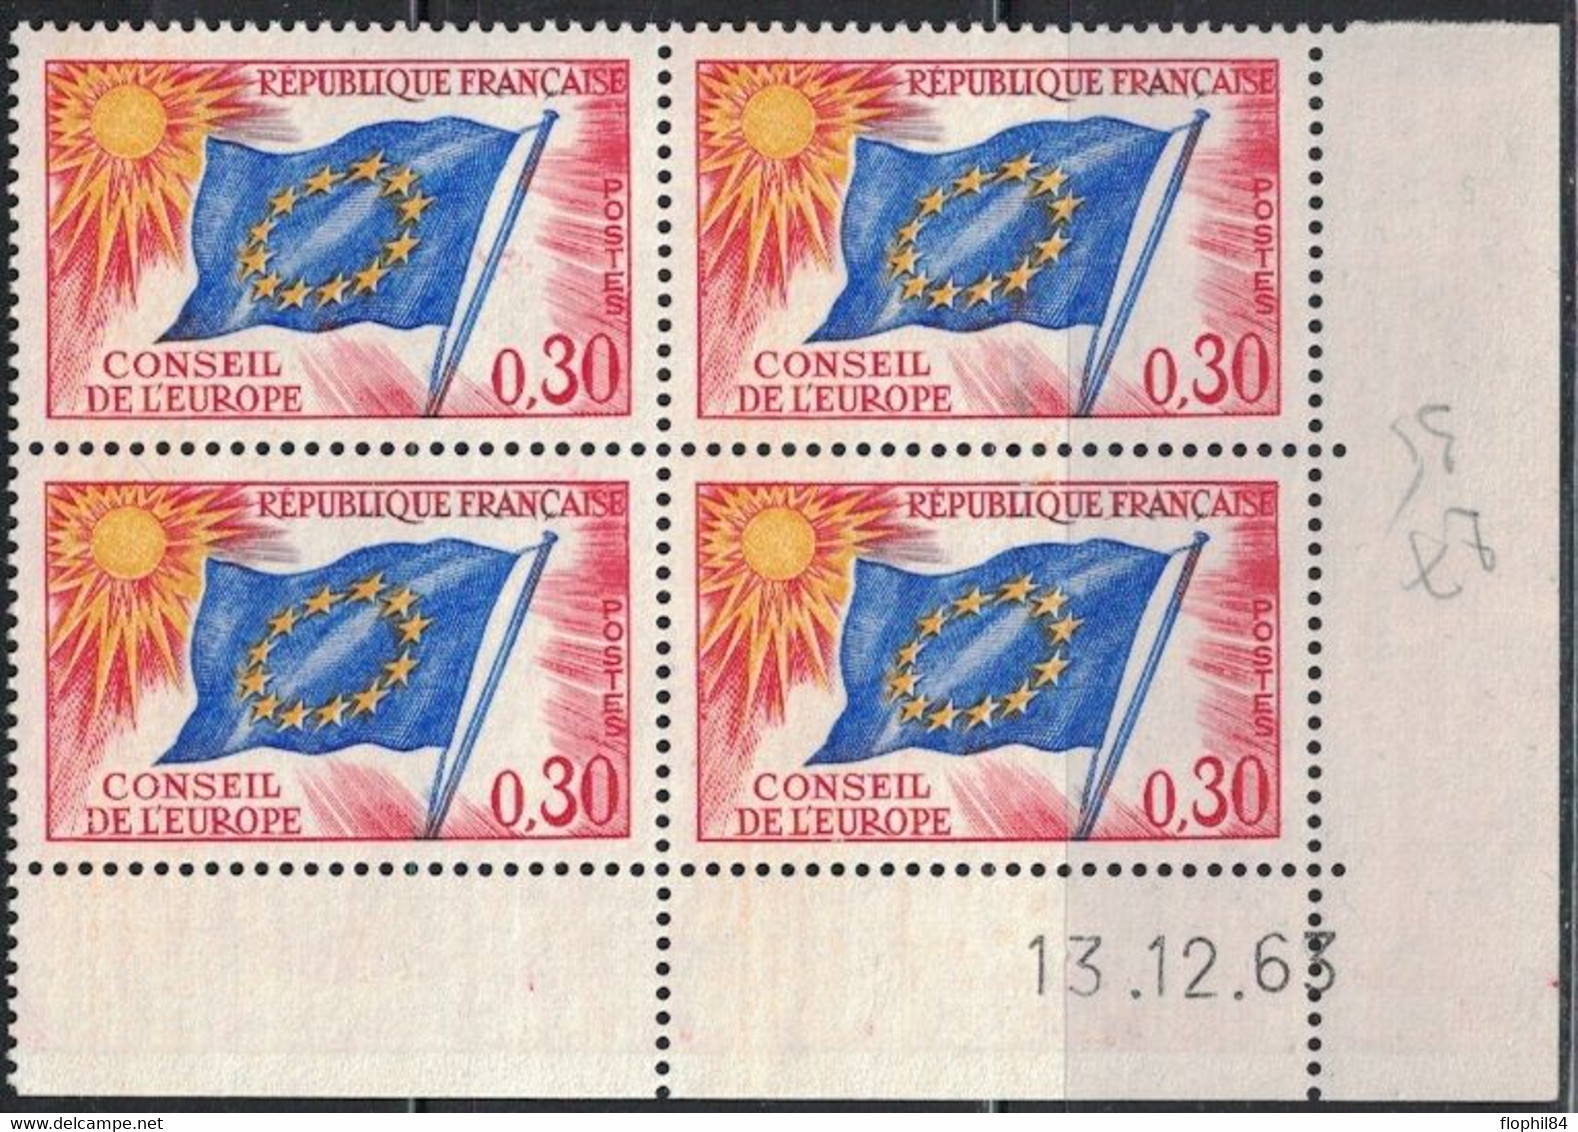 COIN DATE - SERVICE N°30 - 0f30 - CONSEIL DE L'EUROPE - 13-12-1963 - Cote 5€. - Servicio